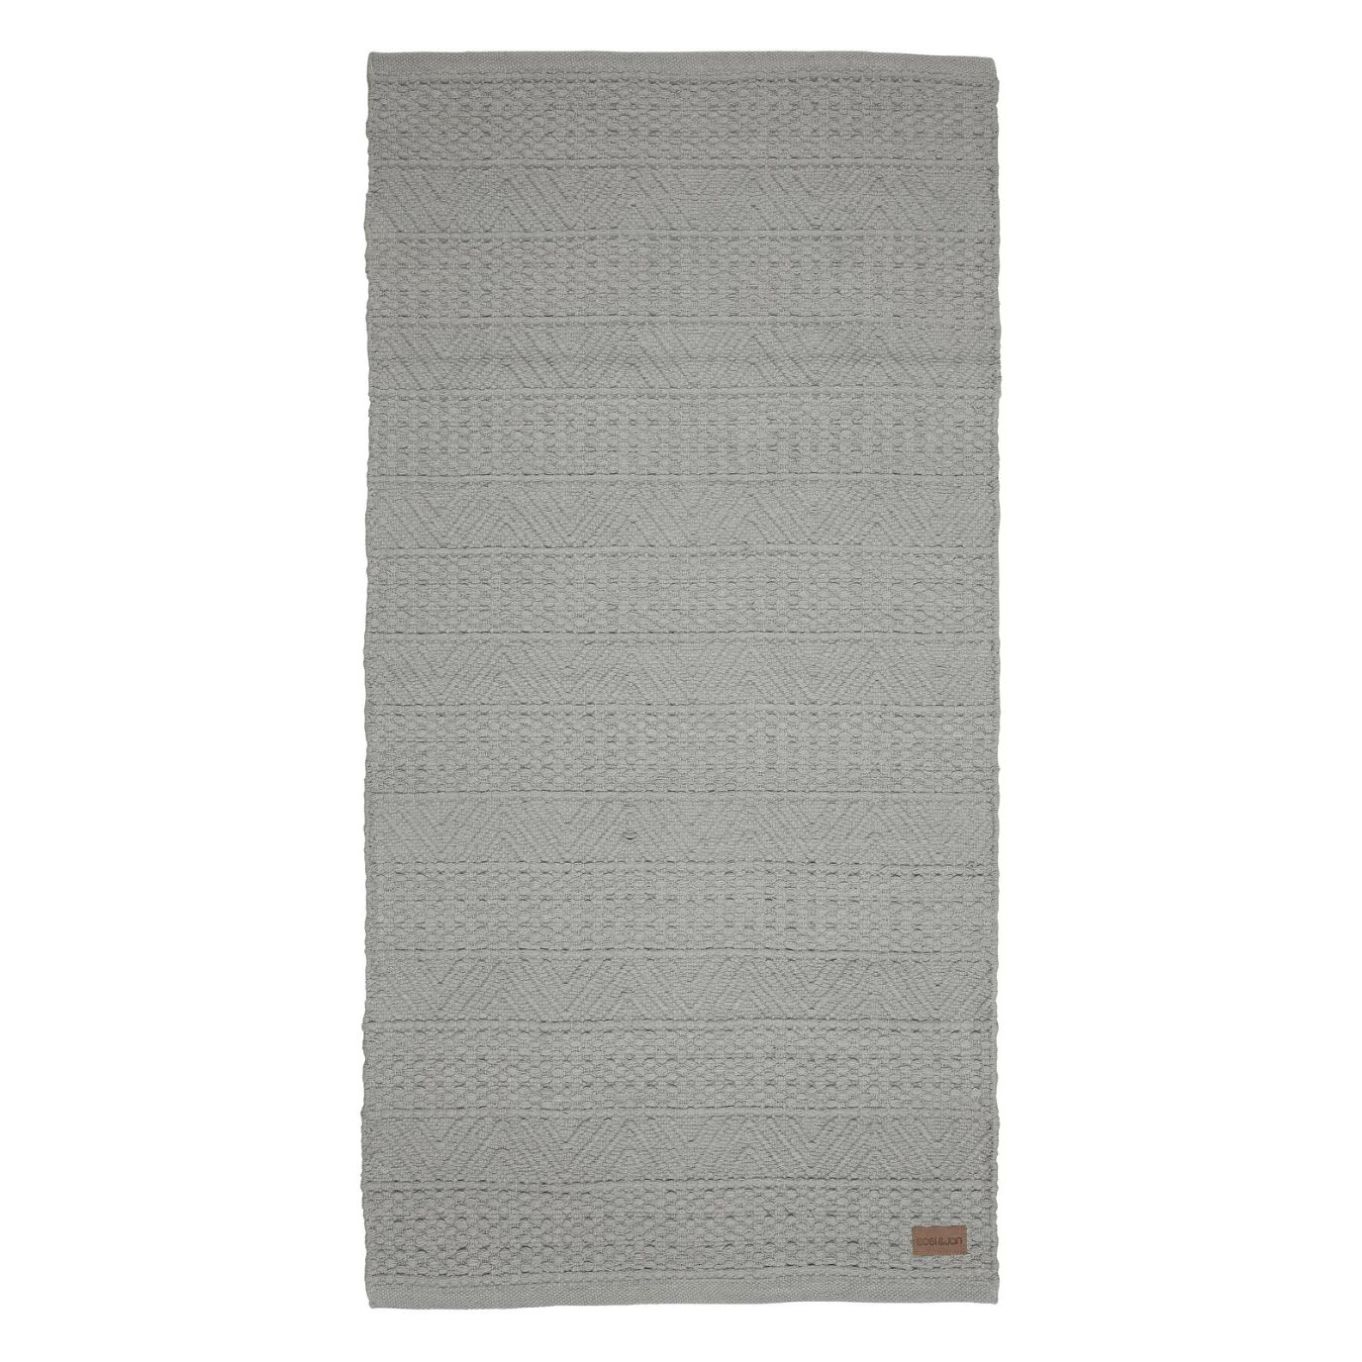 Beatrice en grå matta i 100% bomull som är vävd i ett härligt mönster i mått 160 x 230 cm.